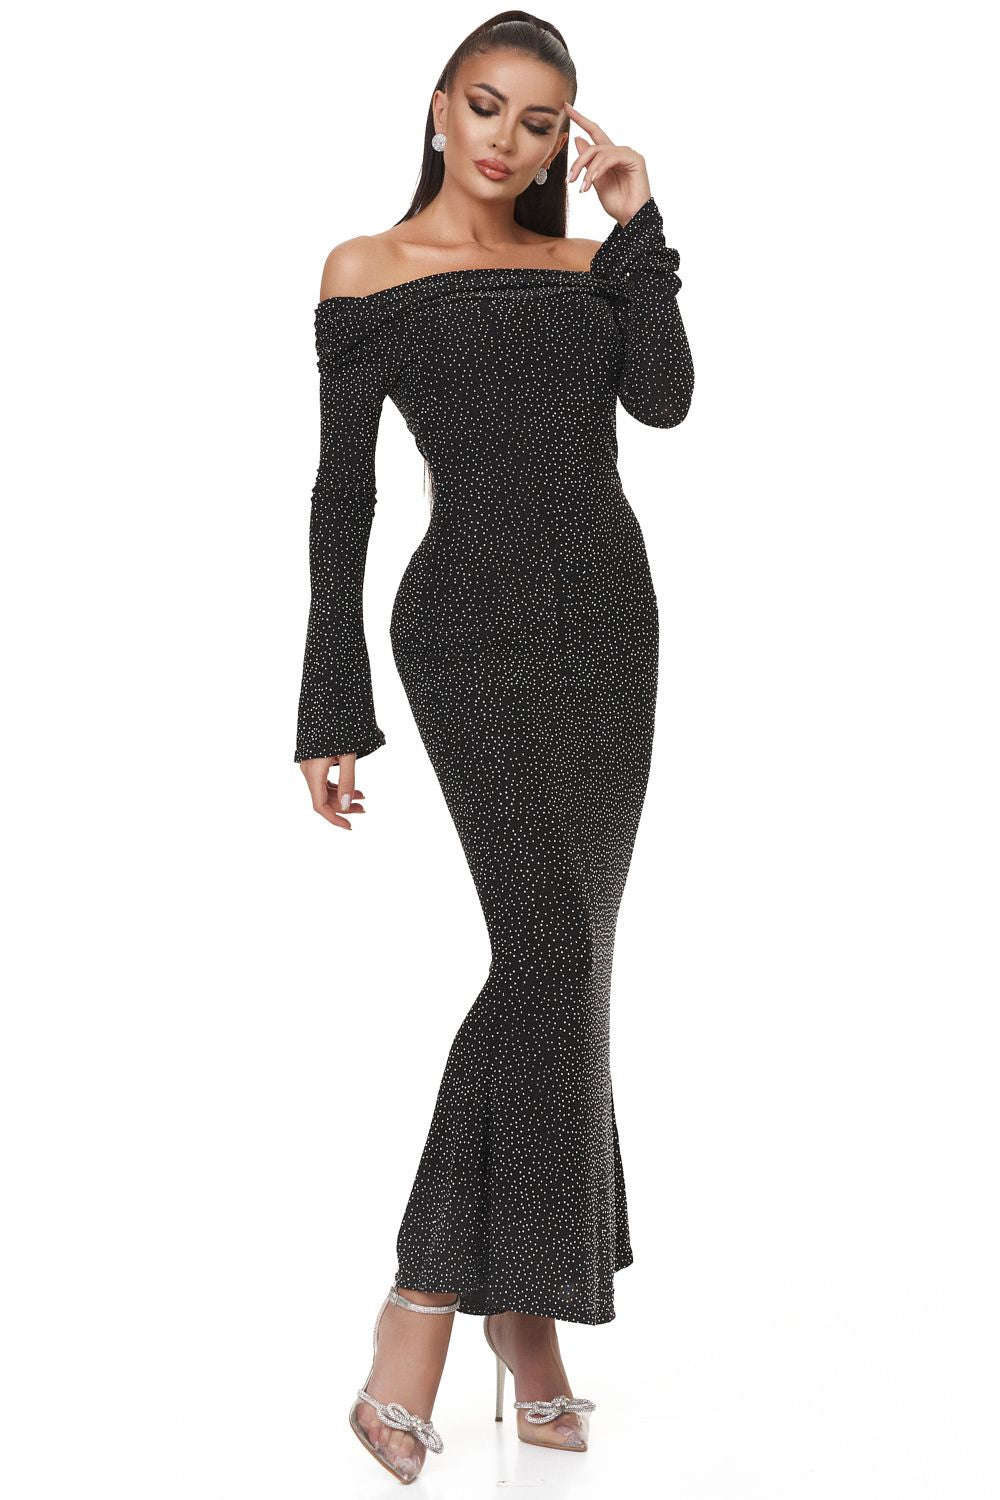 Serevi Bogas hosszú fekete női ruha